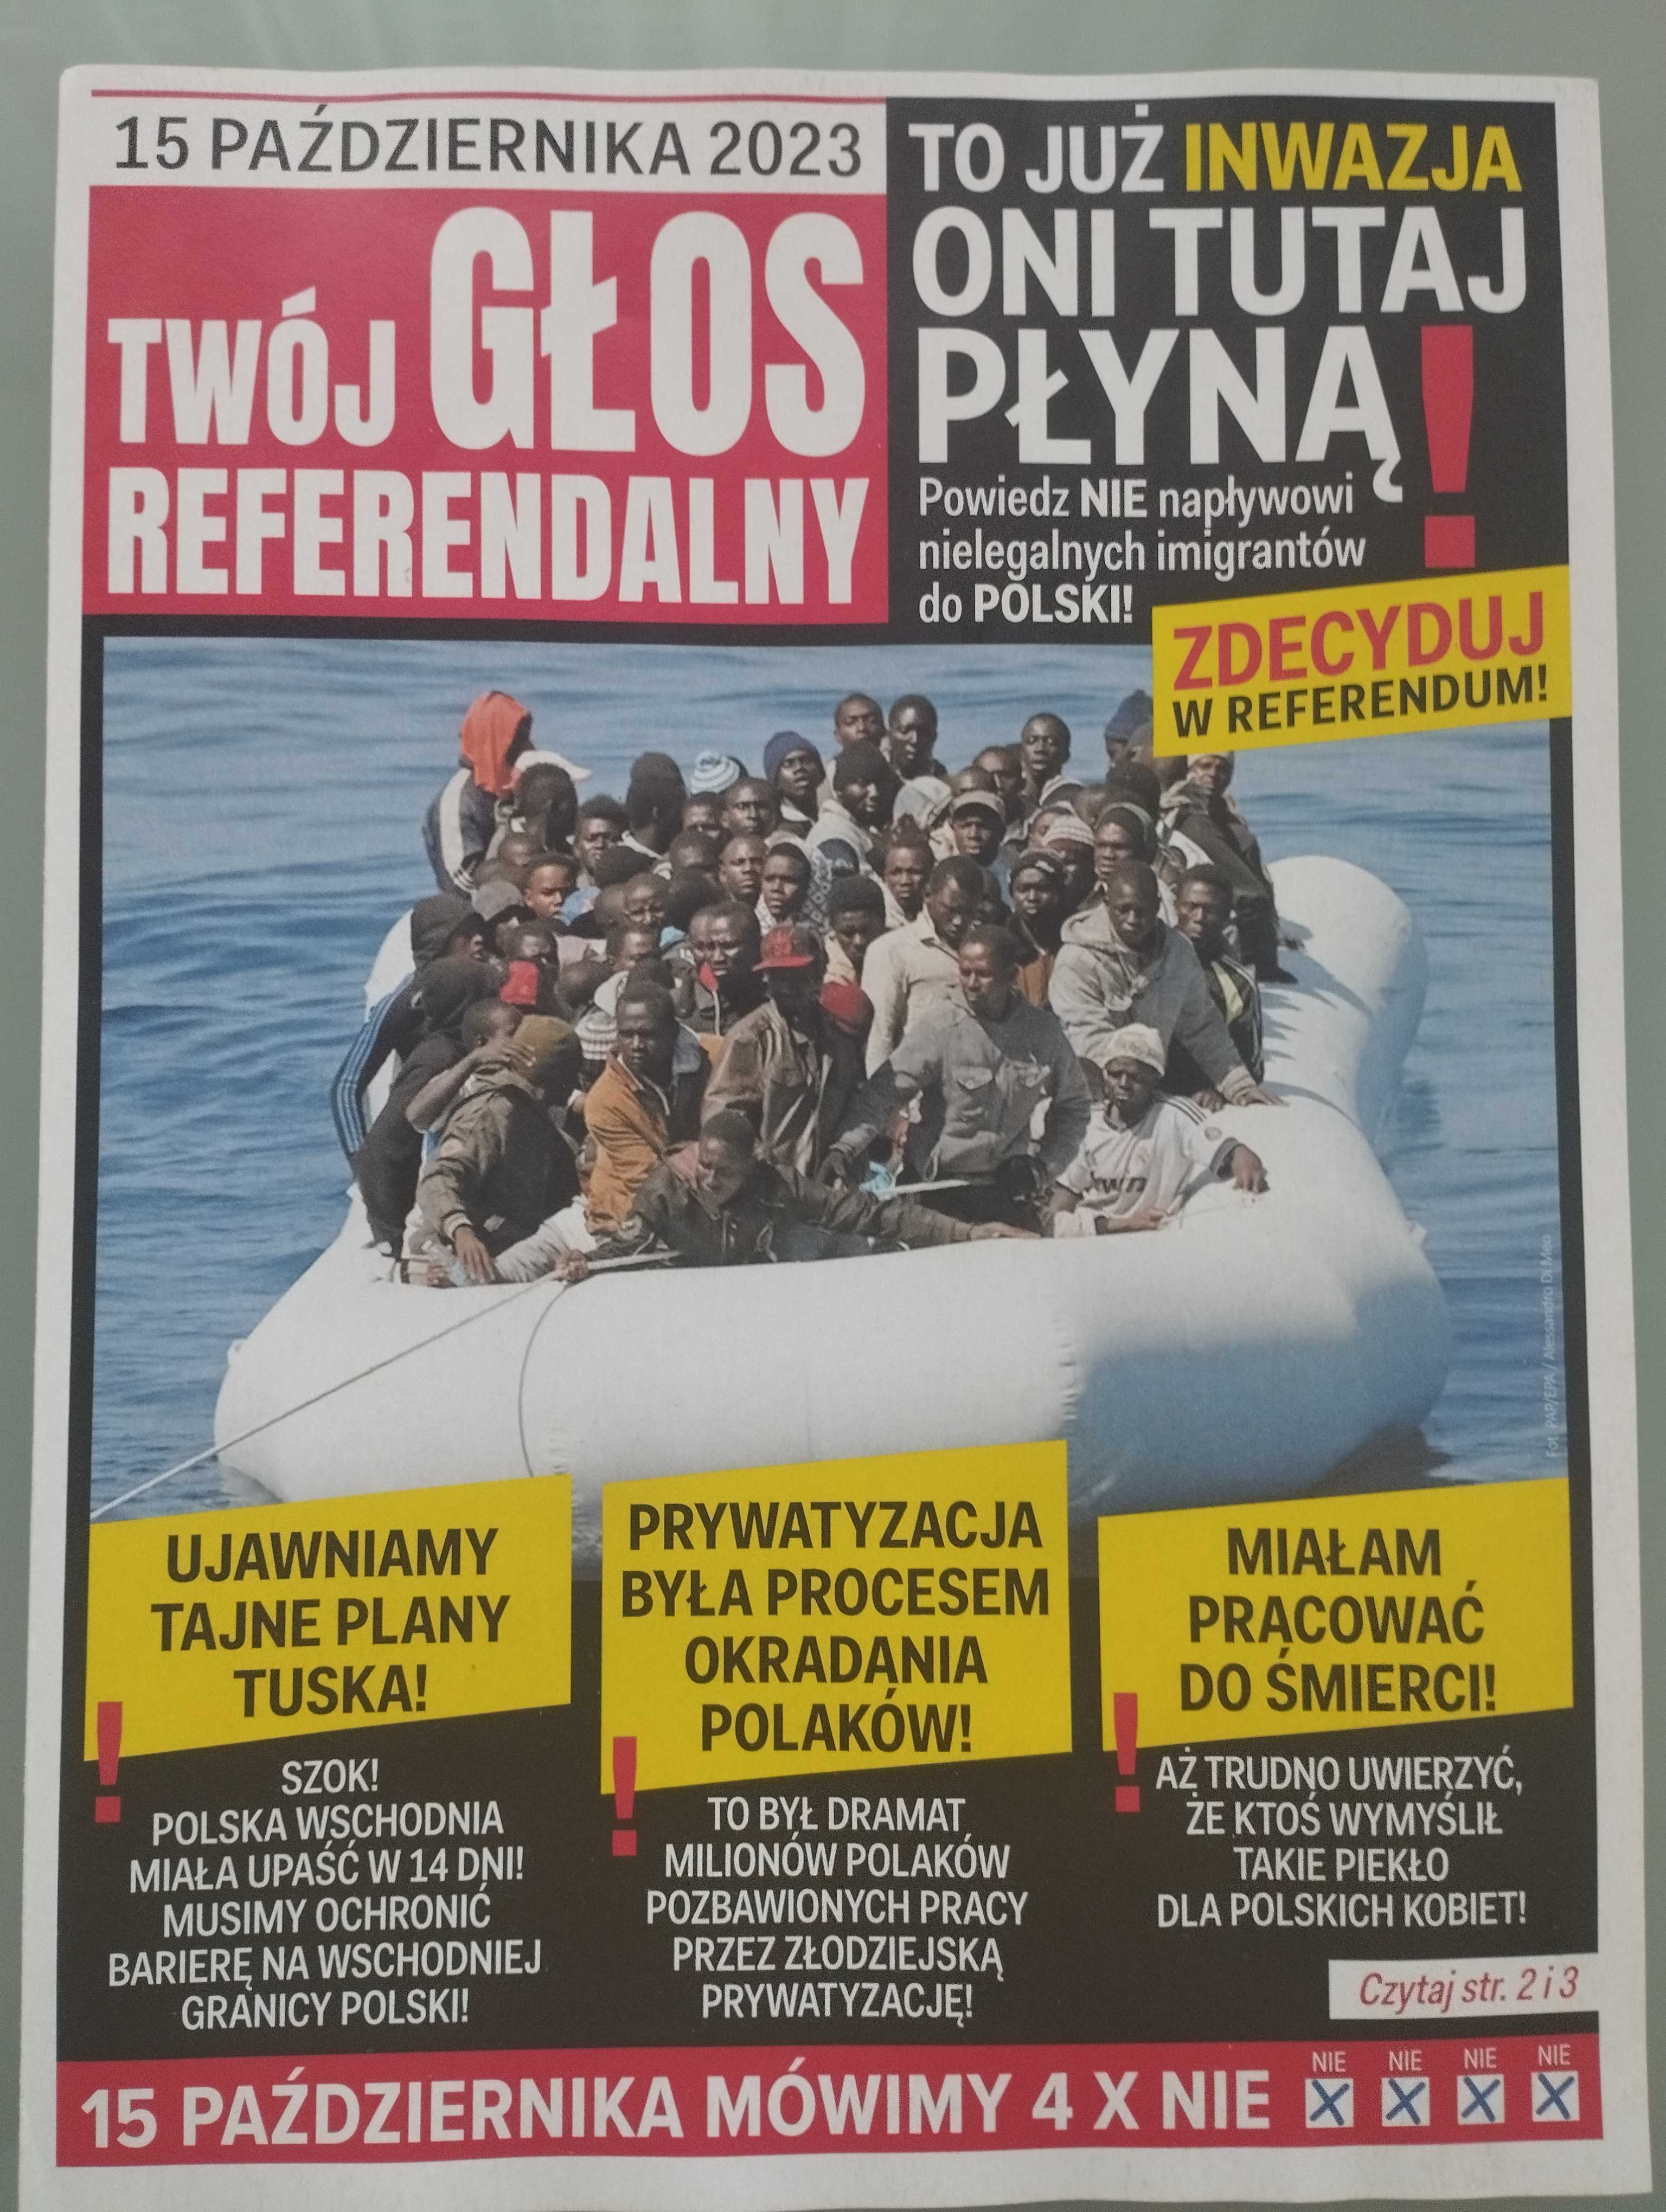 Okładka gazetki: czerwony tytuł "Twój głos referendalny", zdjęcie uchodźców na pontonie i tytuł "Oni już tutaj płyną, inwazja" : twój